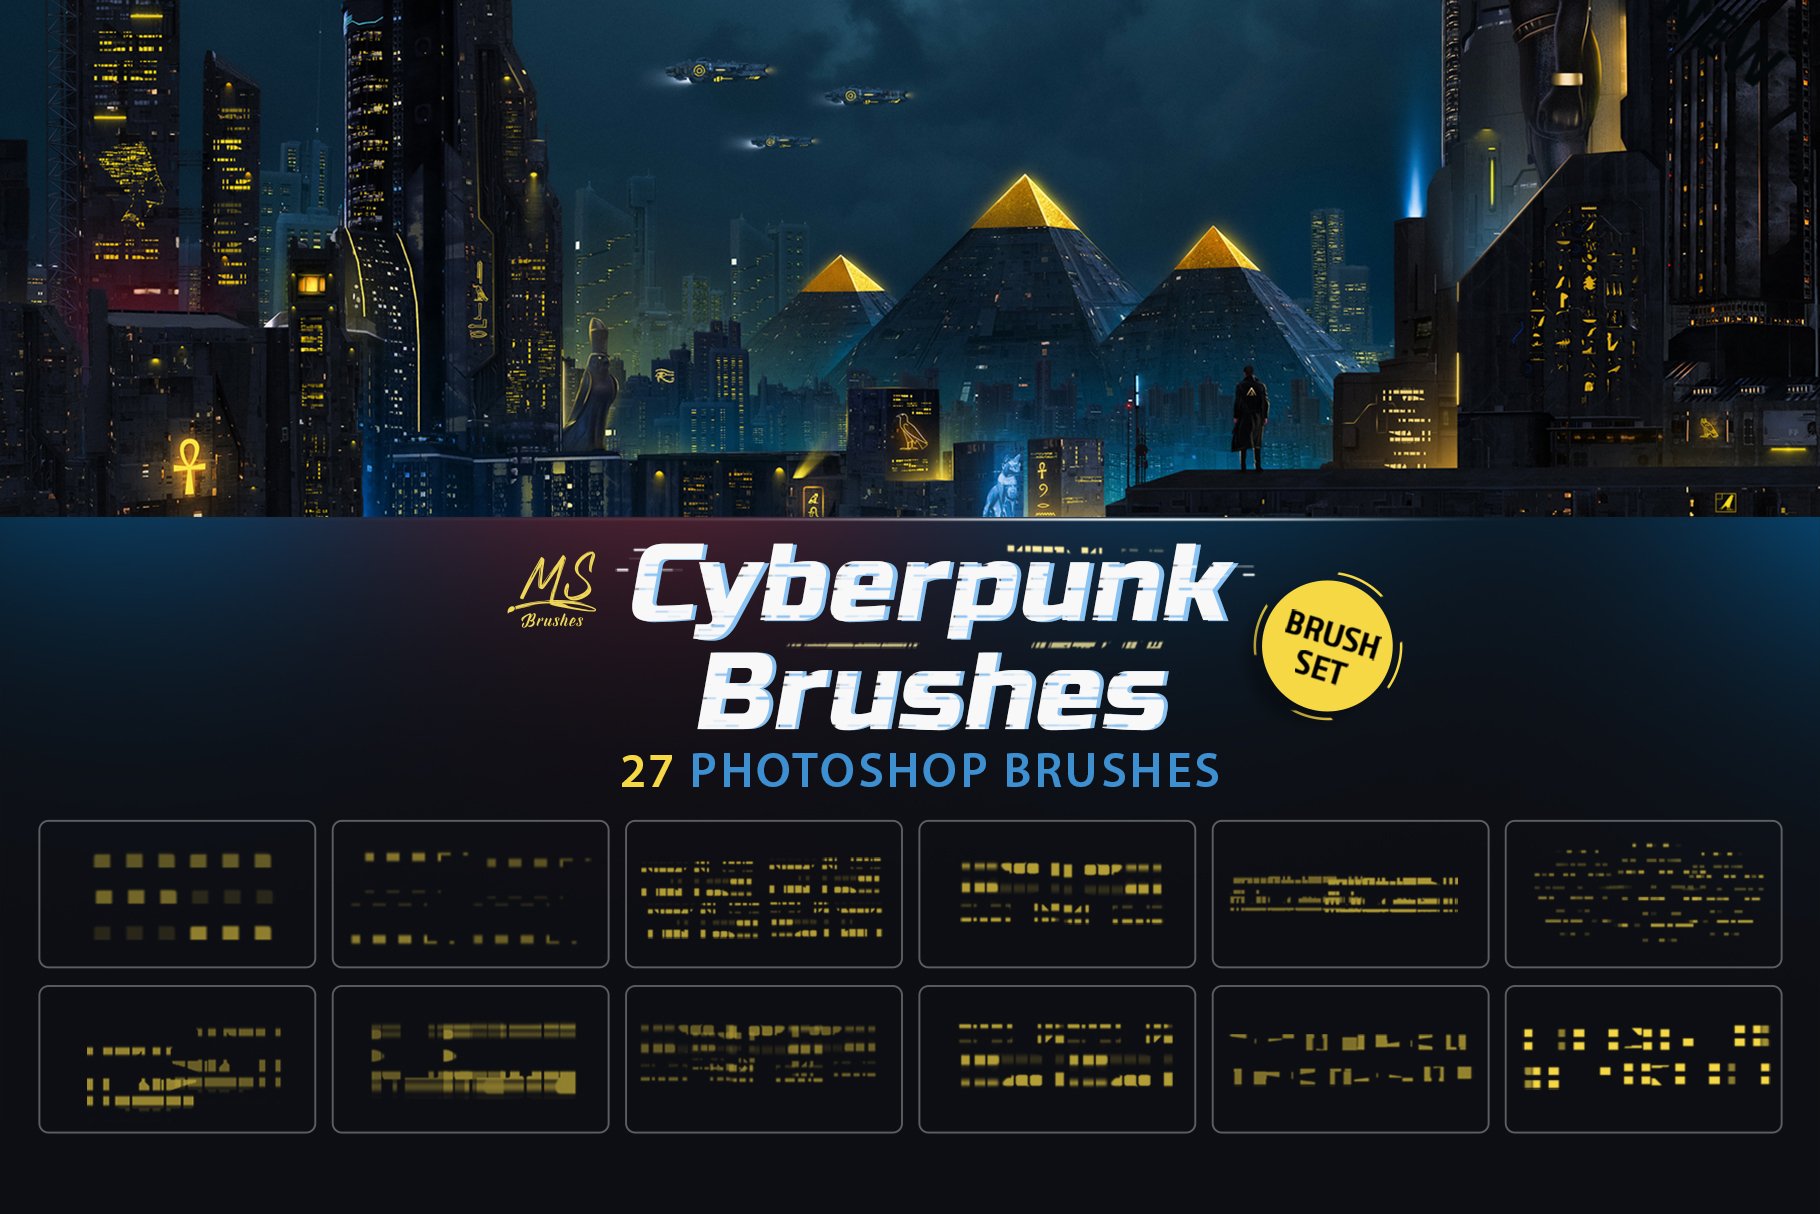 Cyberpunk Photoshop Brushescover image.